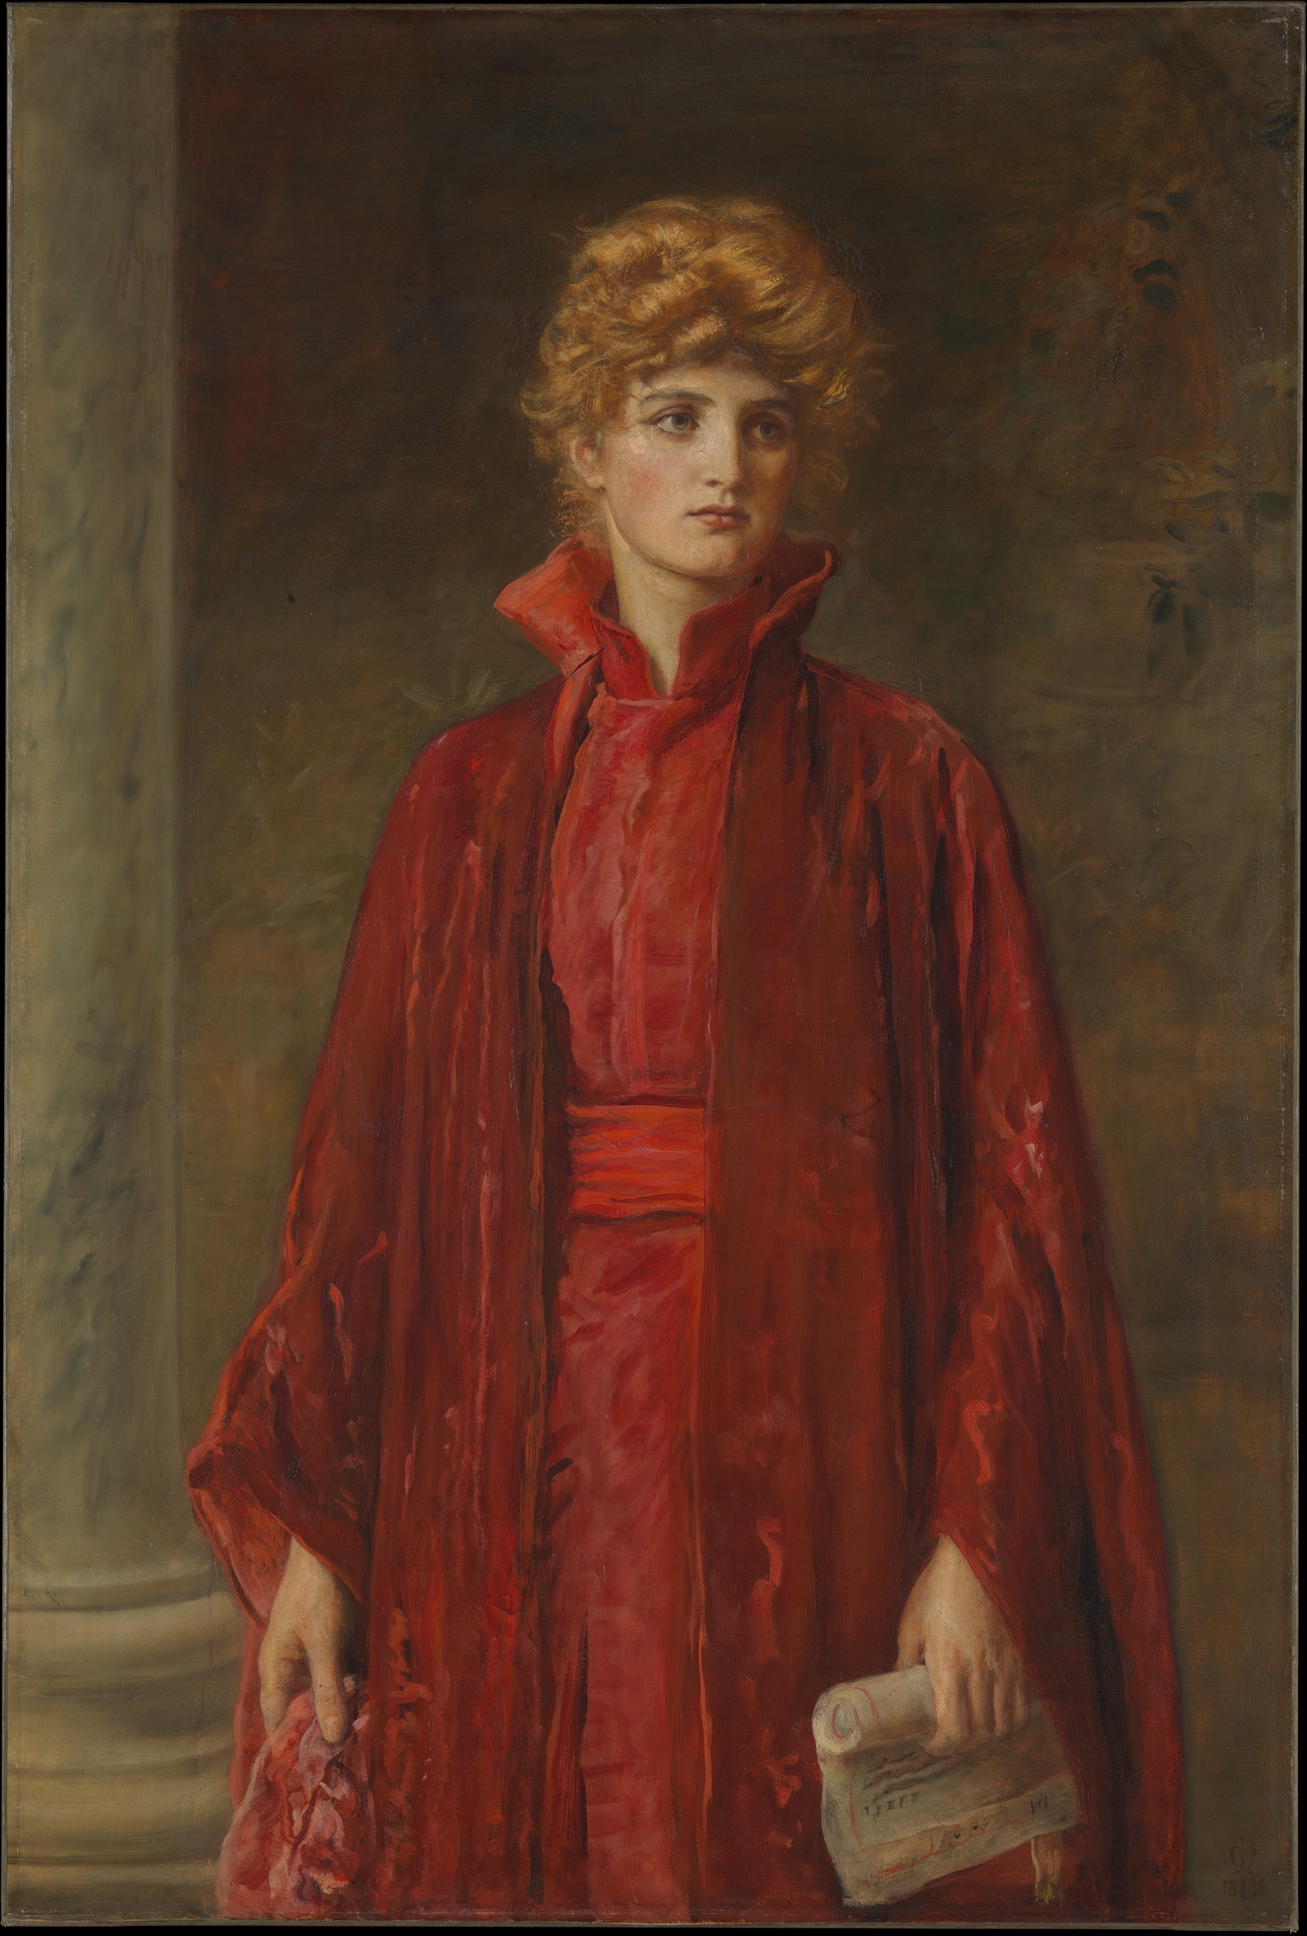 鲍西娅 by 约翰 · 埃弗雷特 · 米莱 - 1886年 - 125.1 x 83.8 厘米 